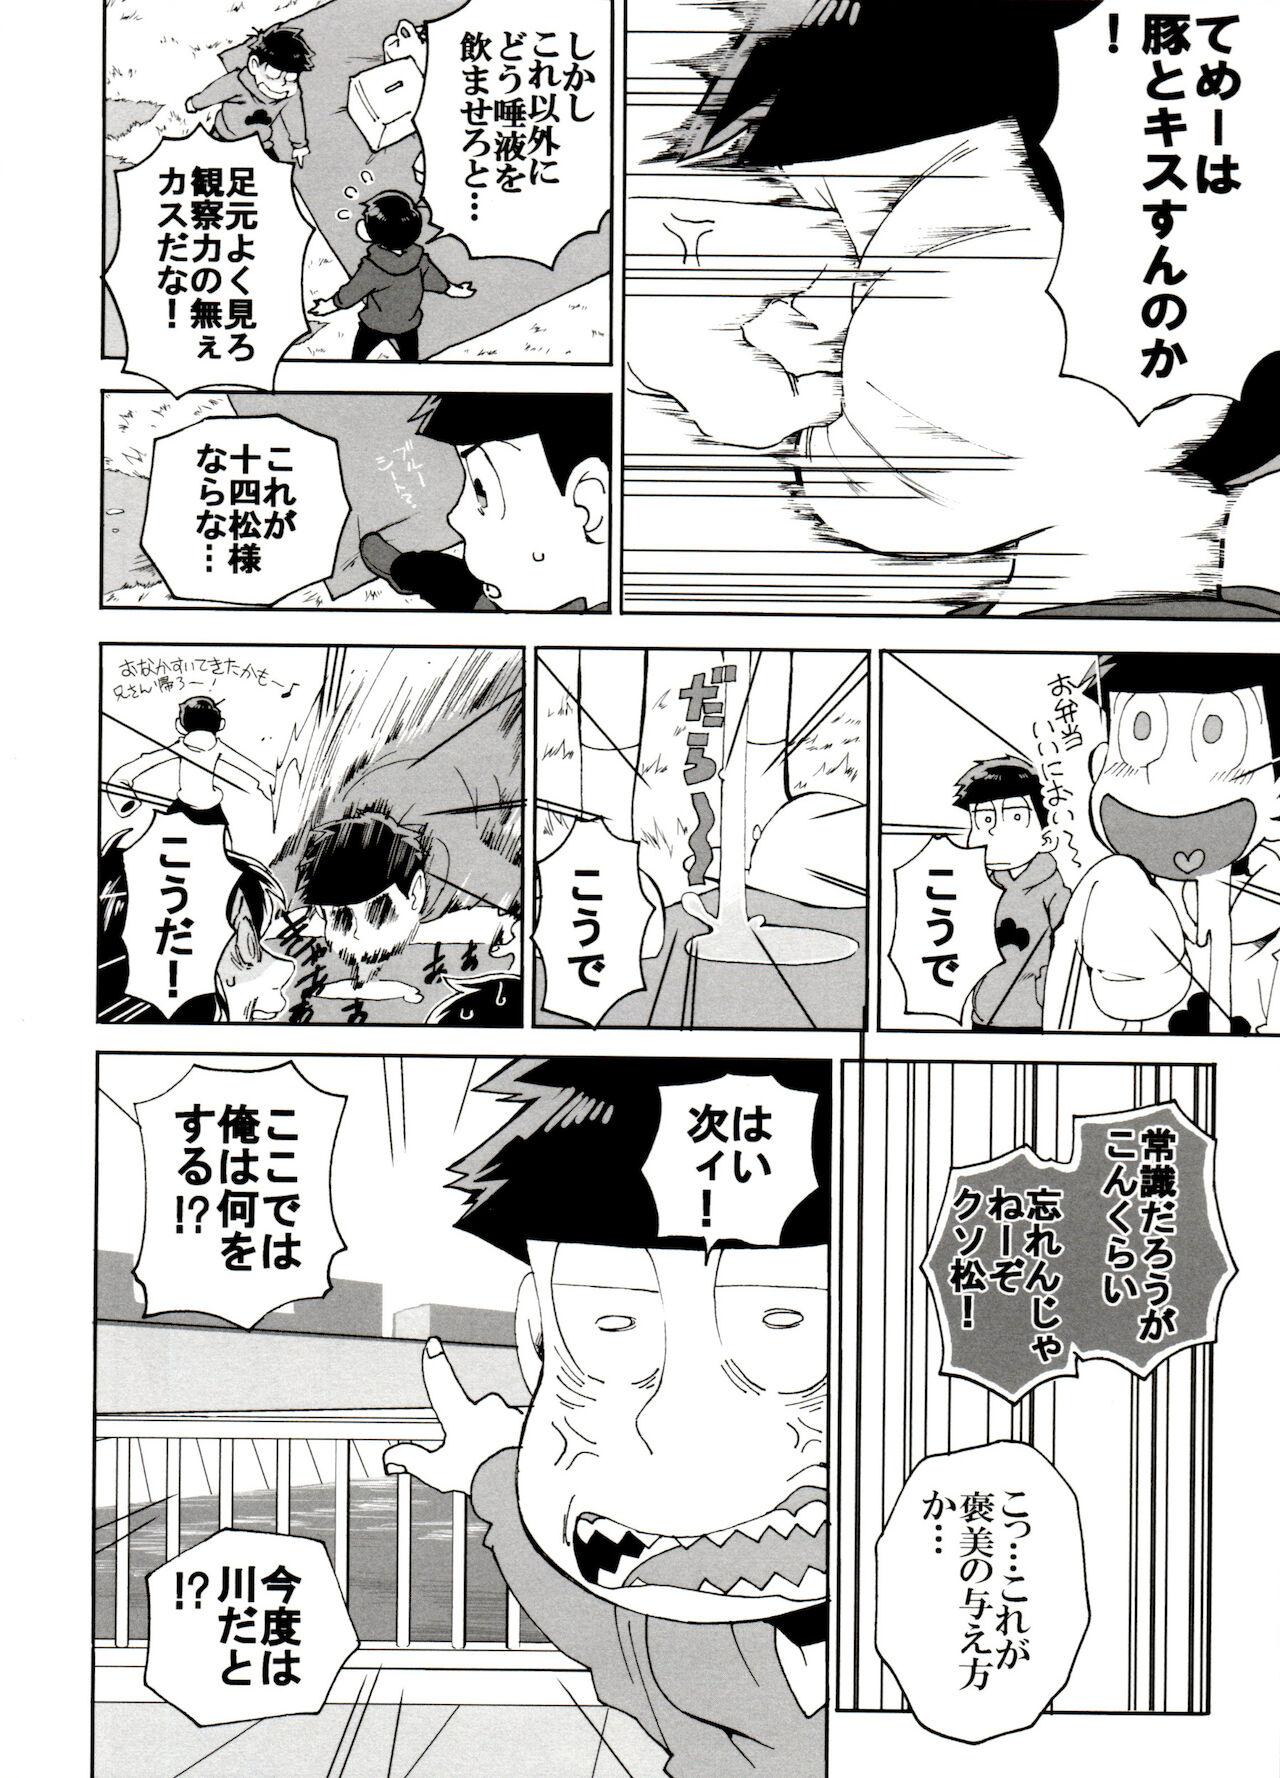 Hung SM Matsu 2 - Osomatsu san Banging - Page 10